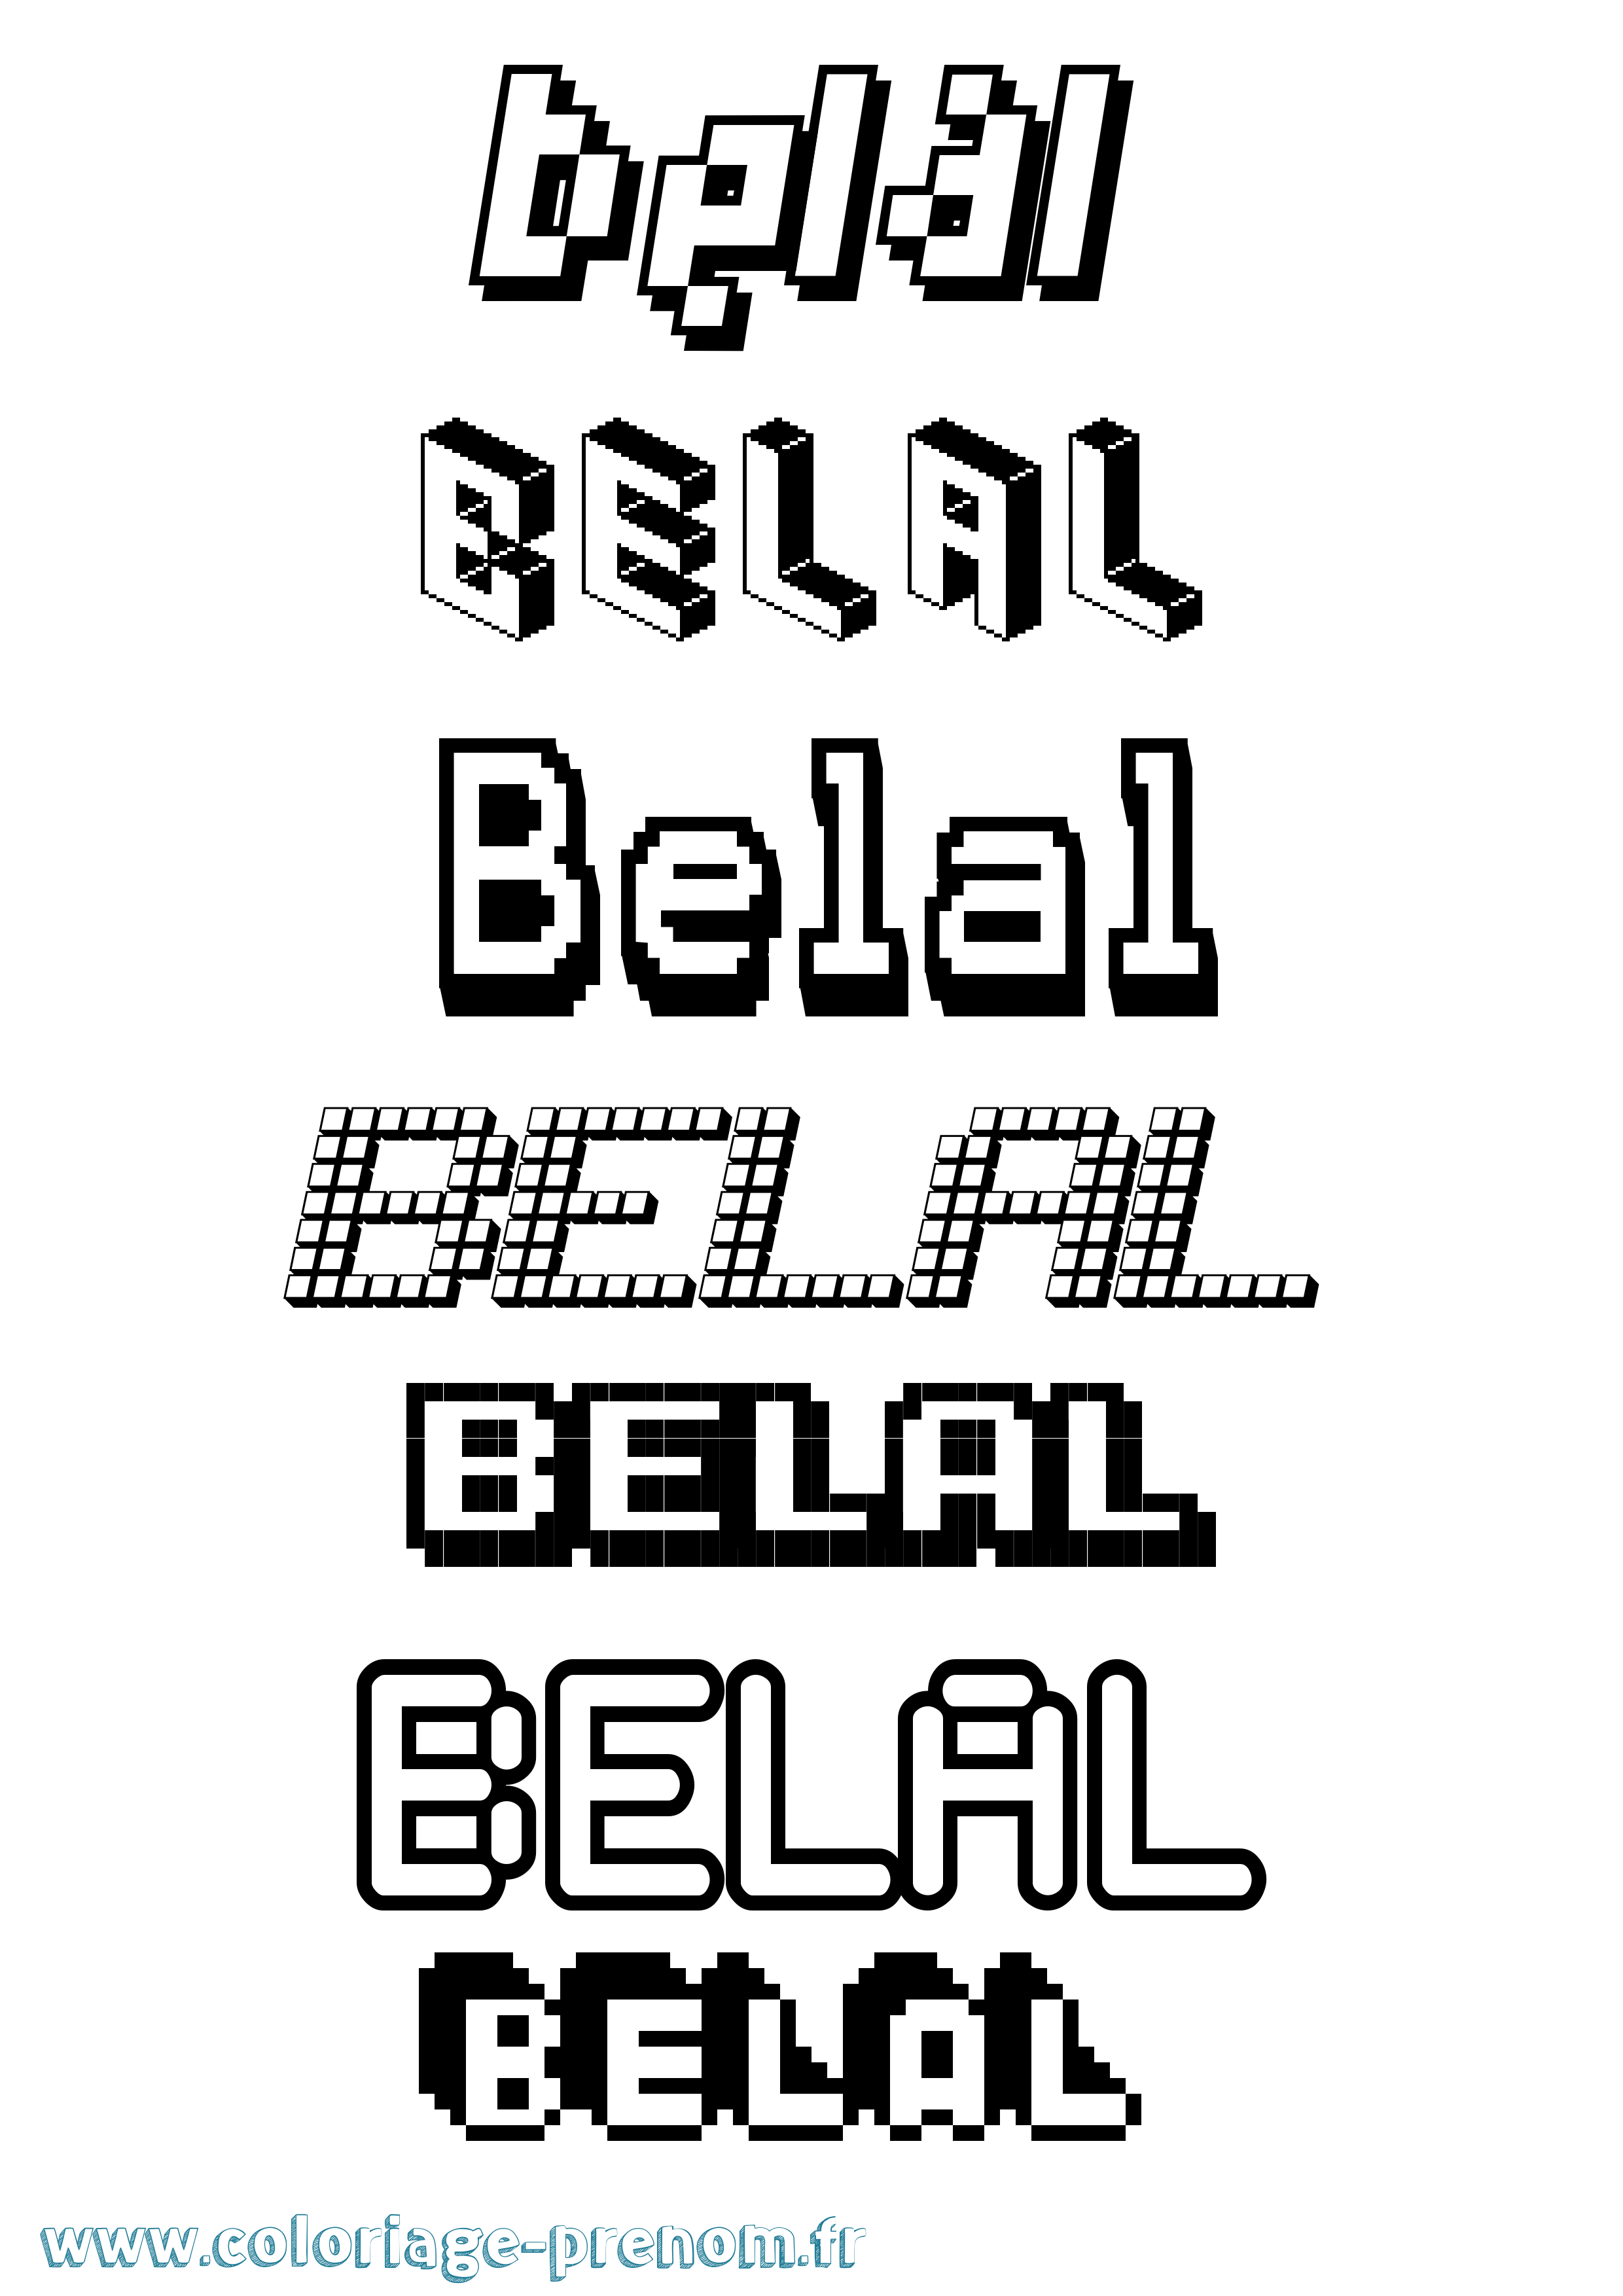 Coloriage prénom Belal Pixel